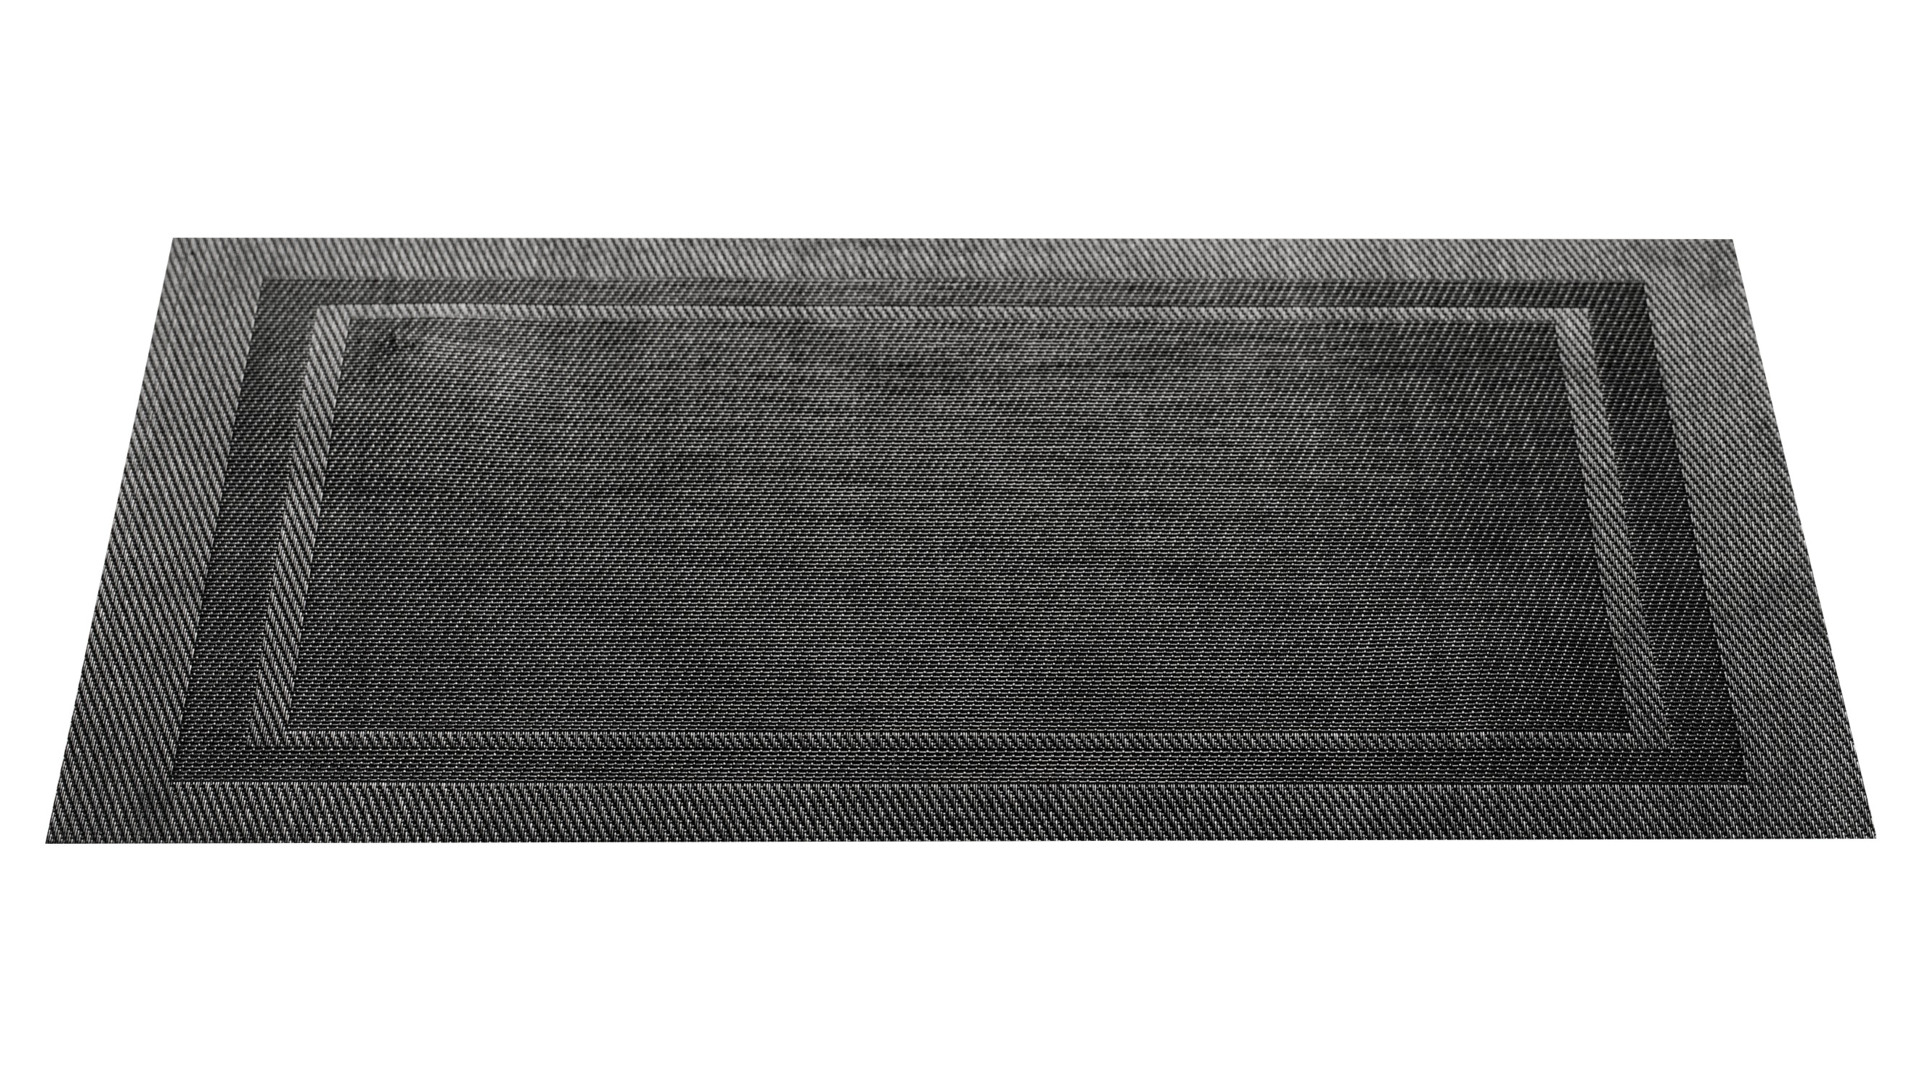 Салфетка подстановочная Harman Блеск 33х48 см, черный